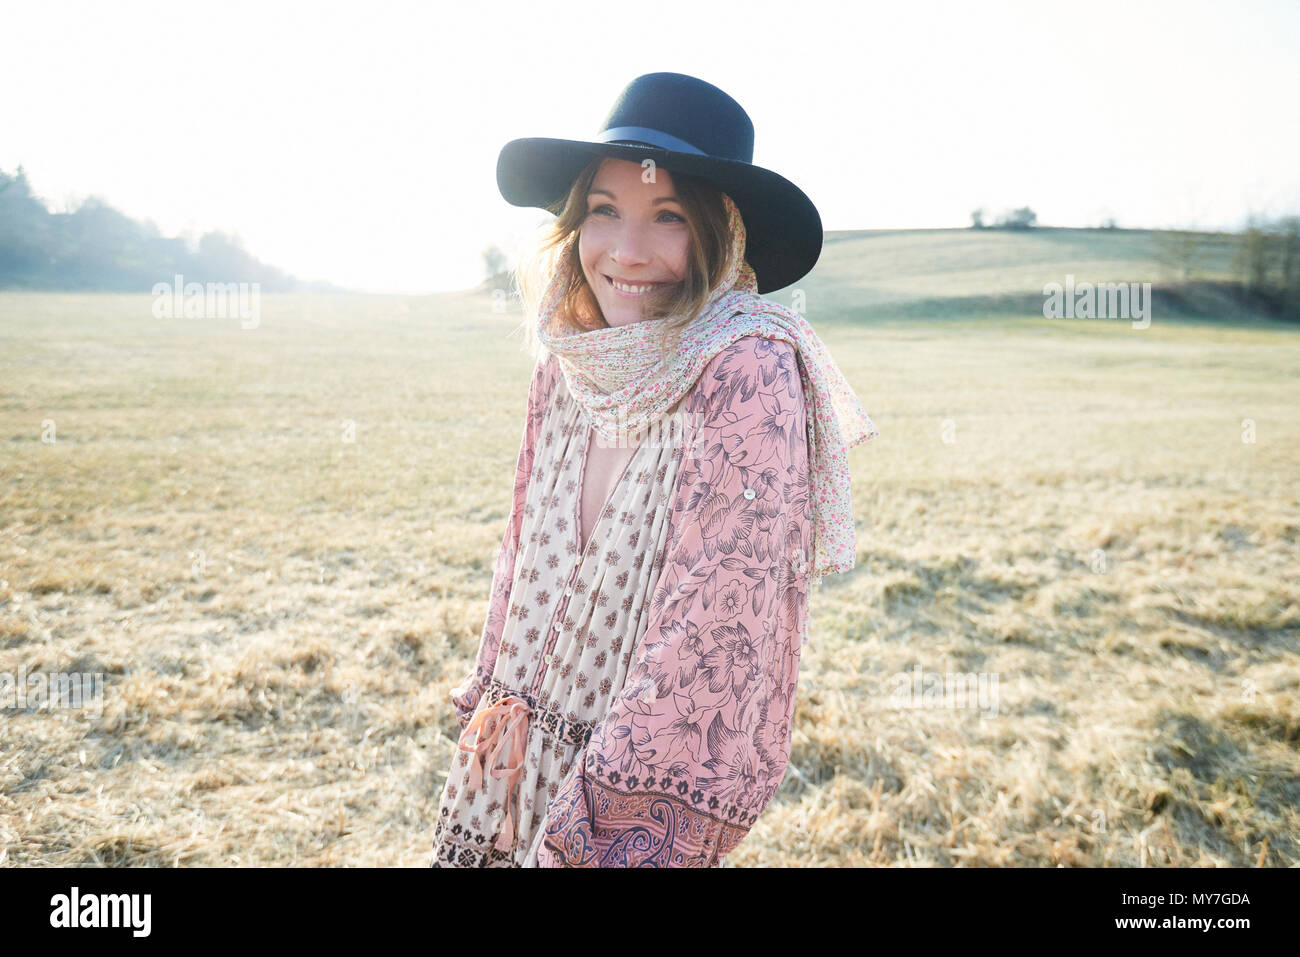 Hippy style woman wearing felt hat in field, portrait Stock Photo